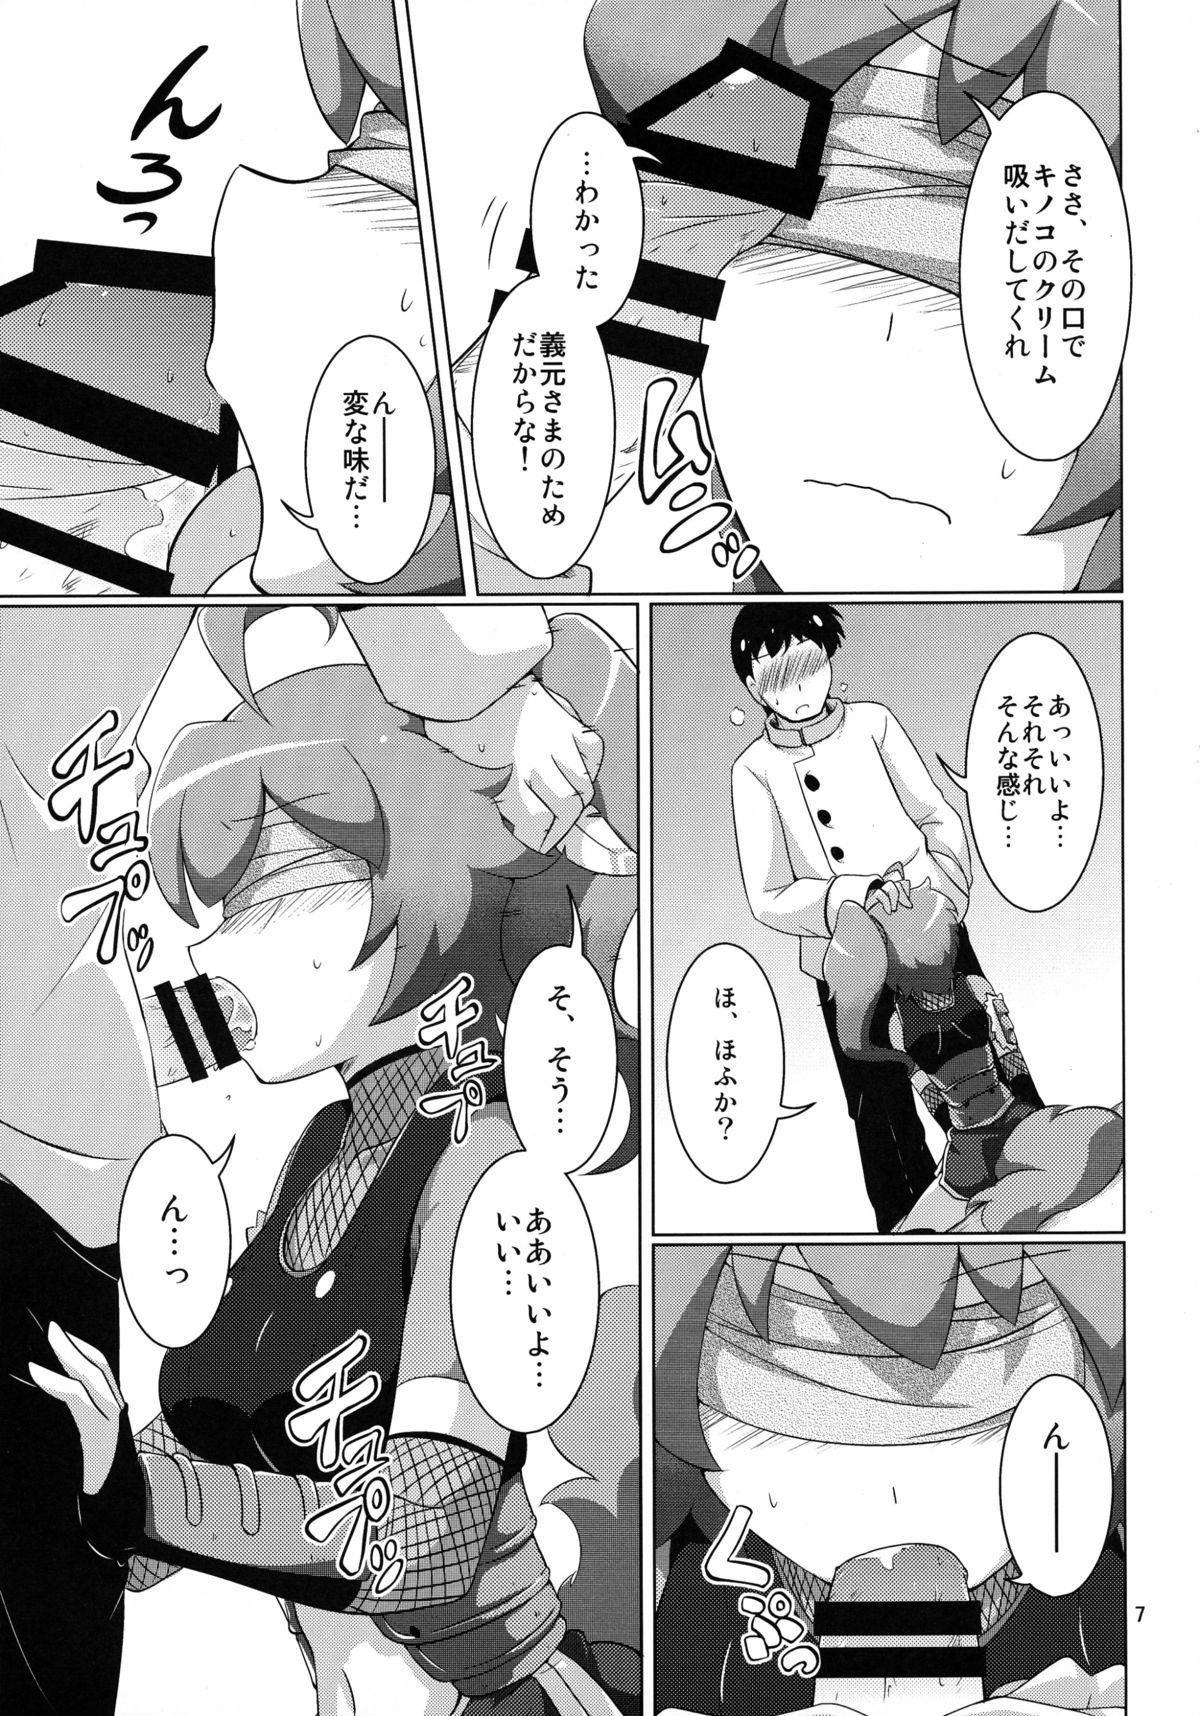 Hot Ochidoda! - Sengoku collection Pounding - Page 7